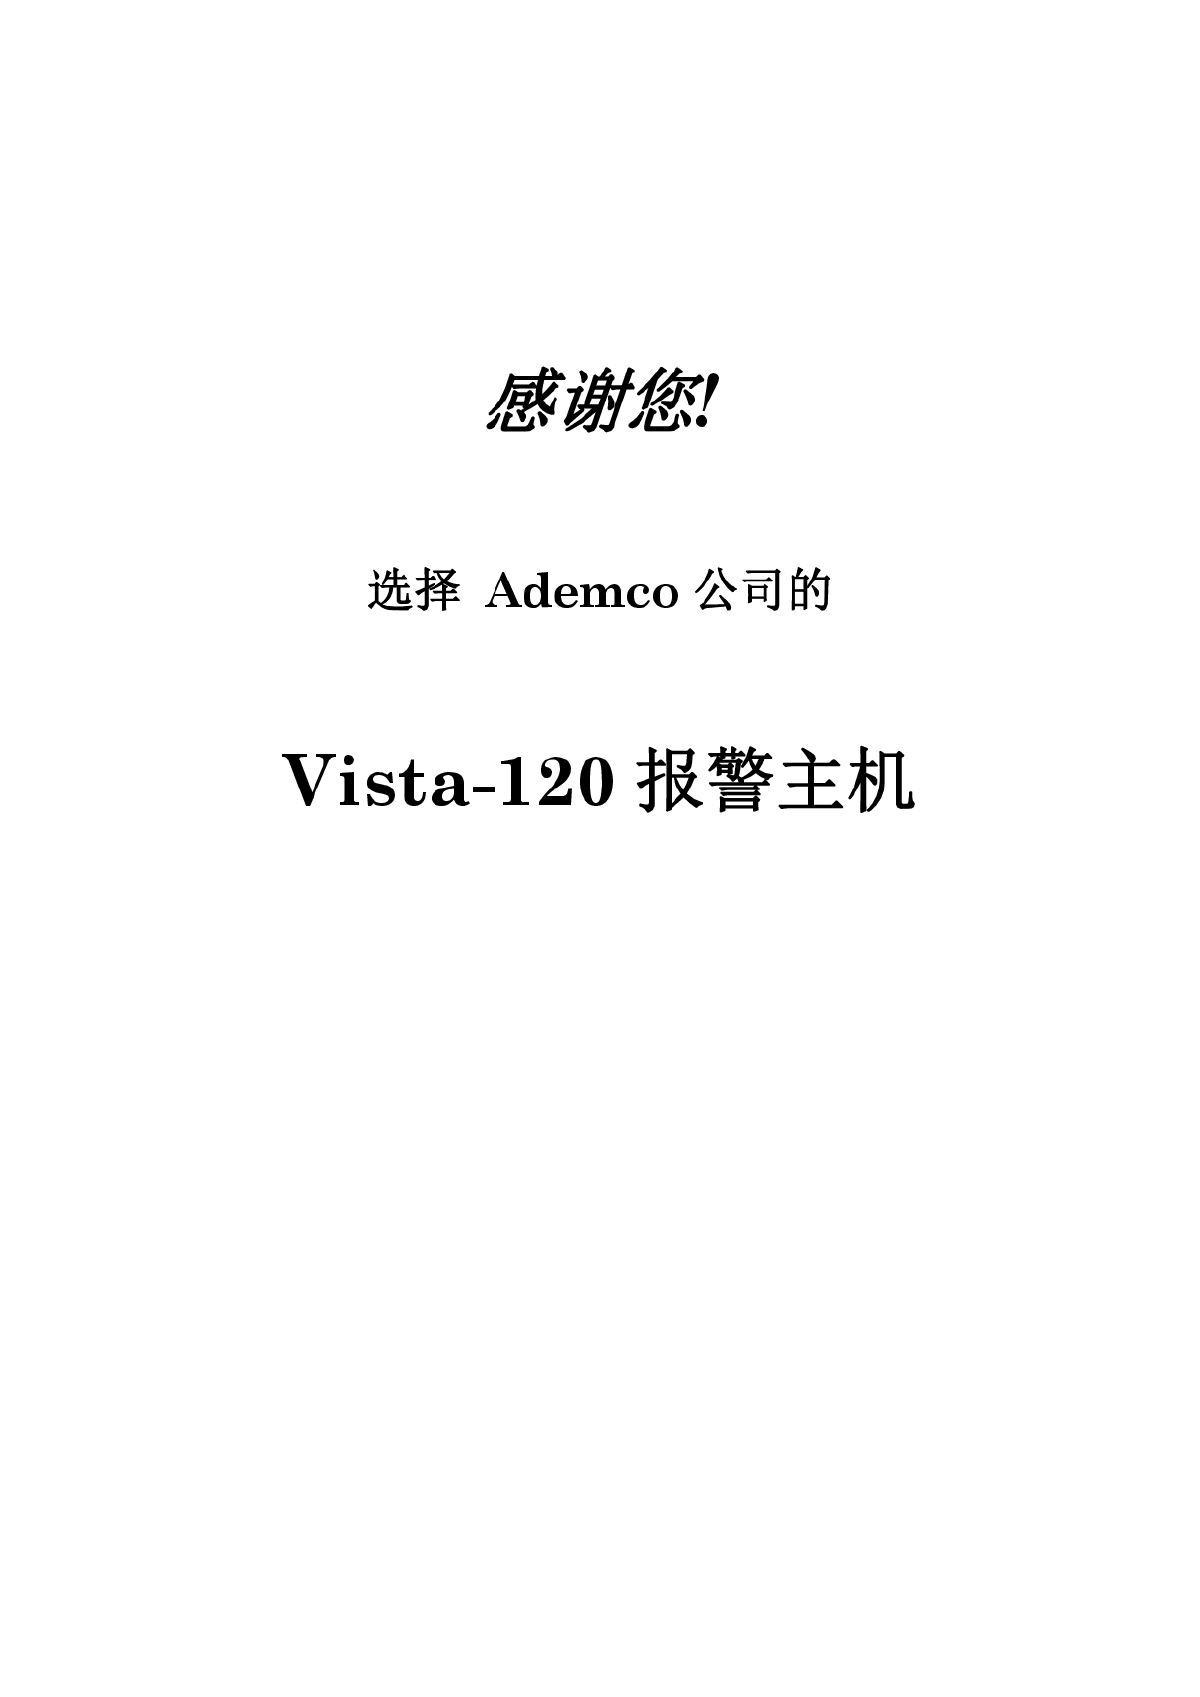 VISTA-120中文说明书-图二